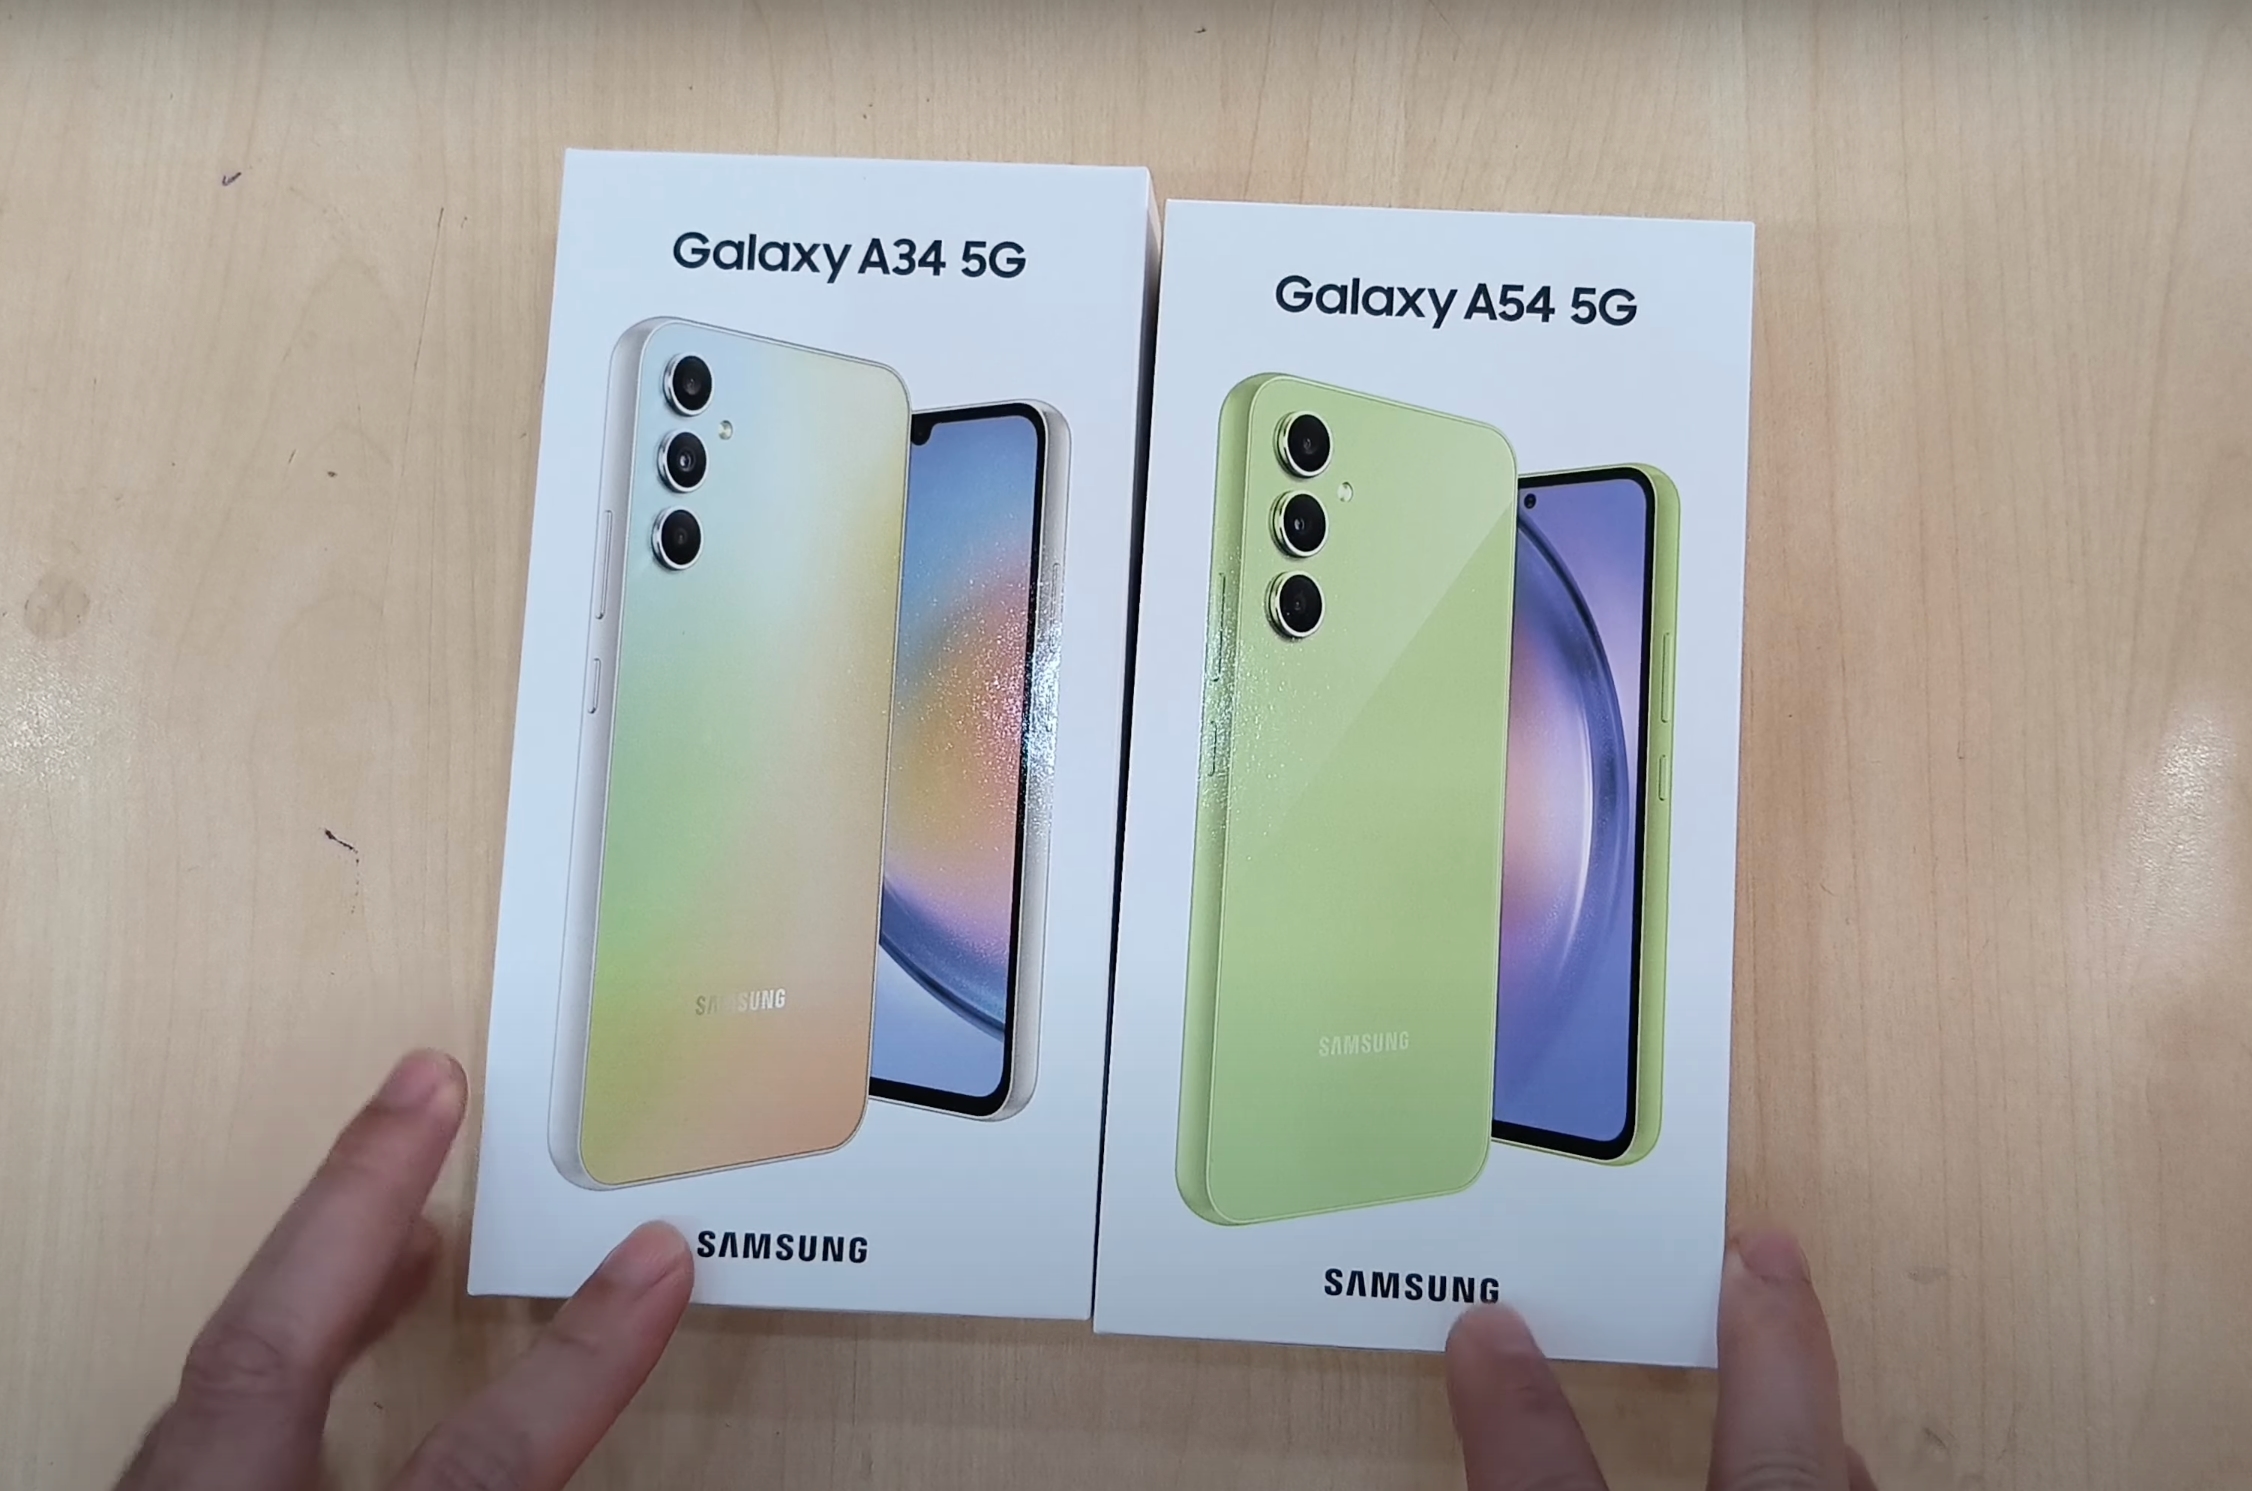 A tre giorni dalla presentazione: è emerso online un video dell'unboxing dei Galaxy A34 e Galaxy A54